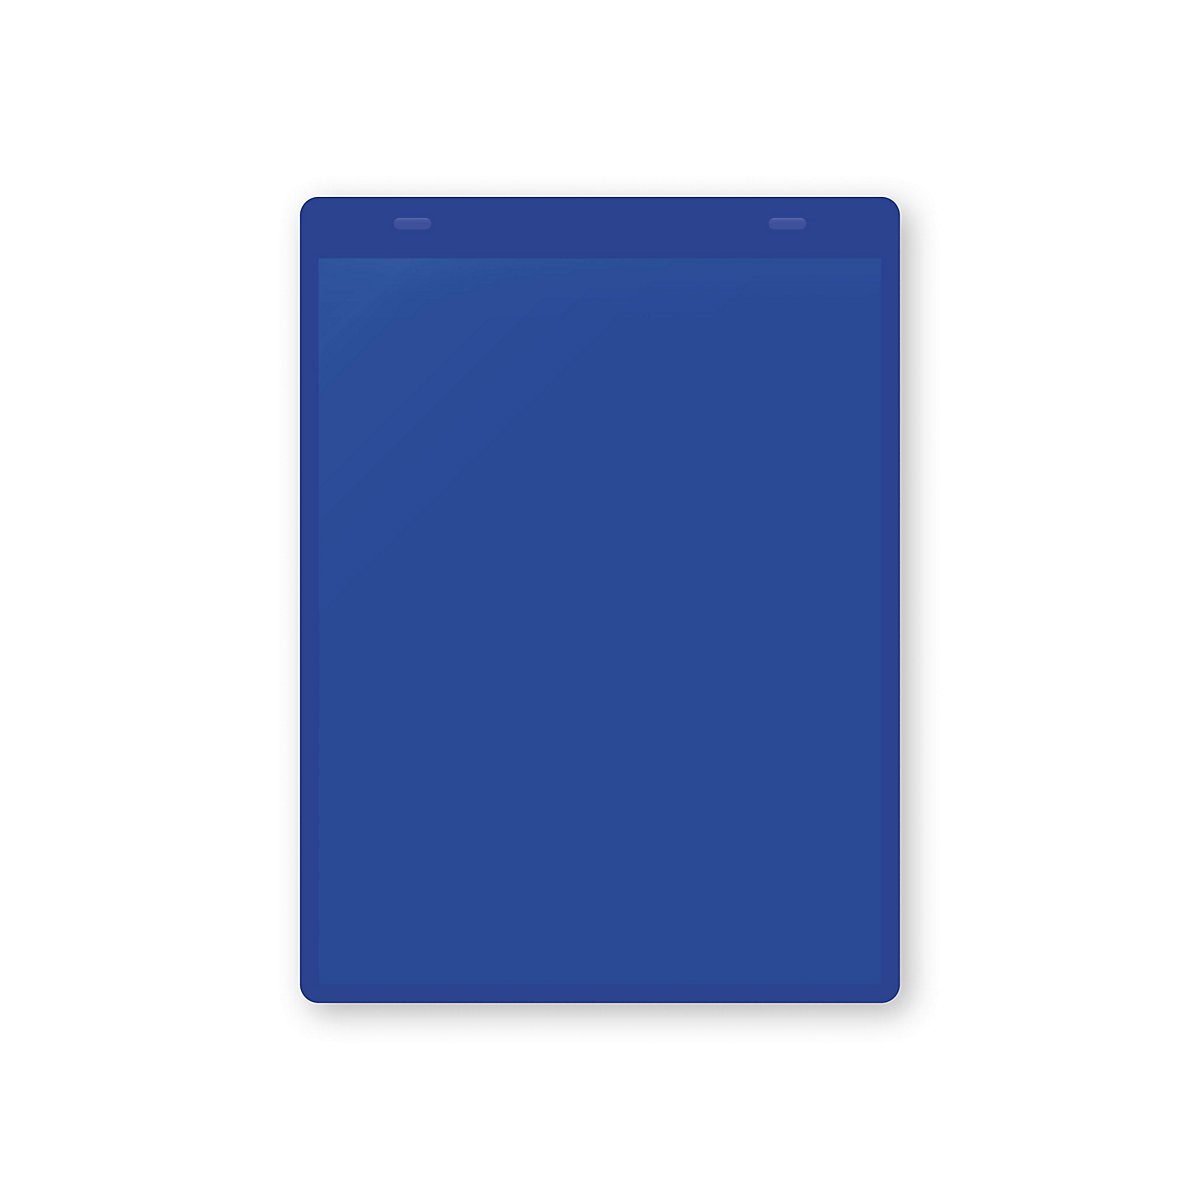 Dokumentumtartó tasakok akasztópánttal, DIN A5, álló, cs. e. 50 db, kék